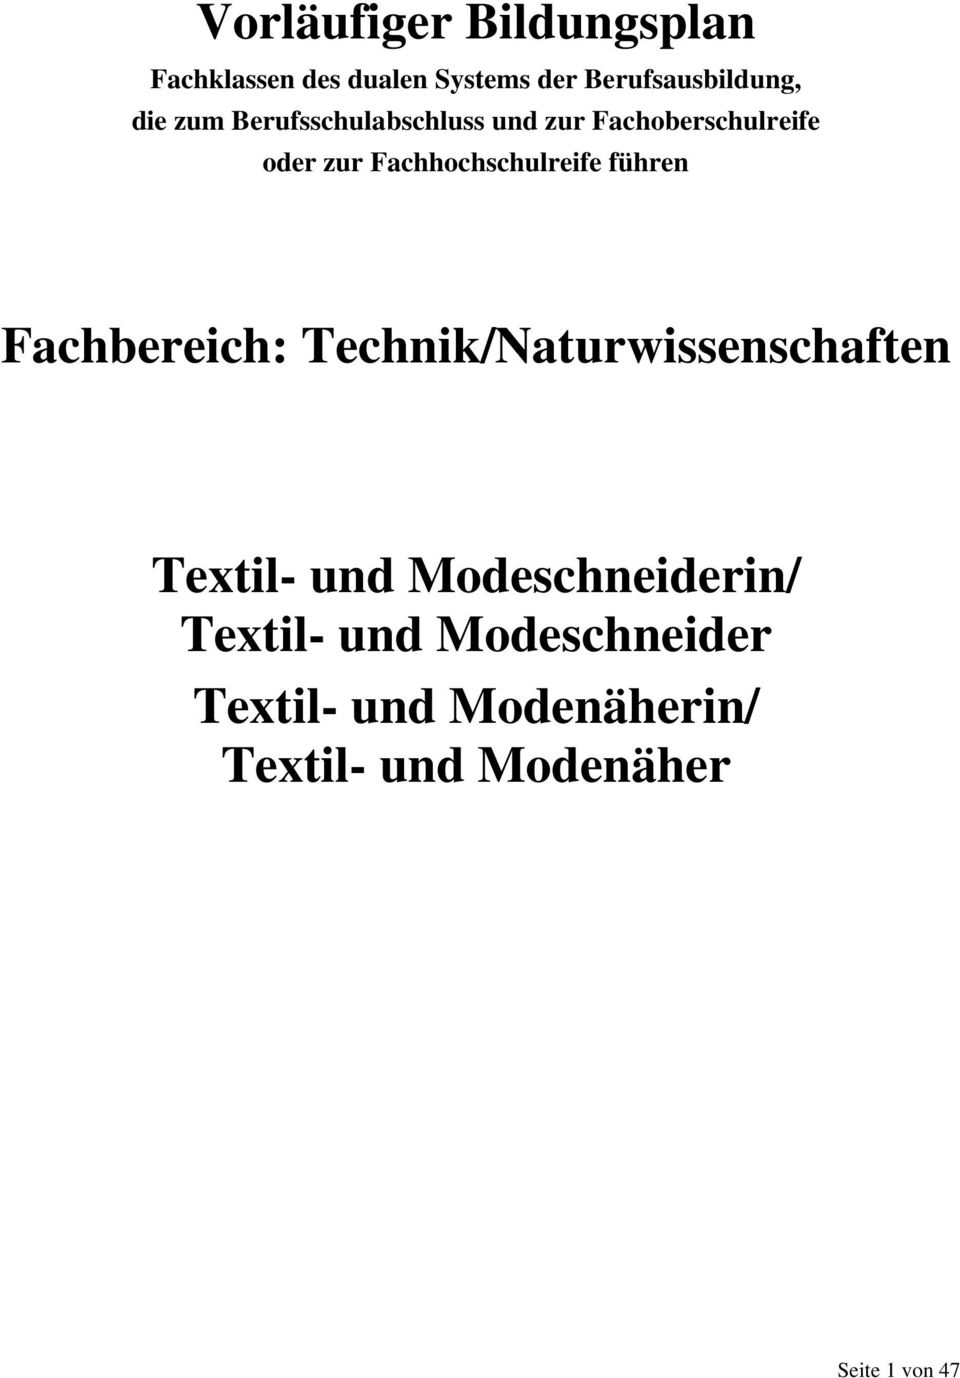 führen Fachbereich: Technik/Naturwissenschaften Textil- und Modeschneiderin/